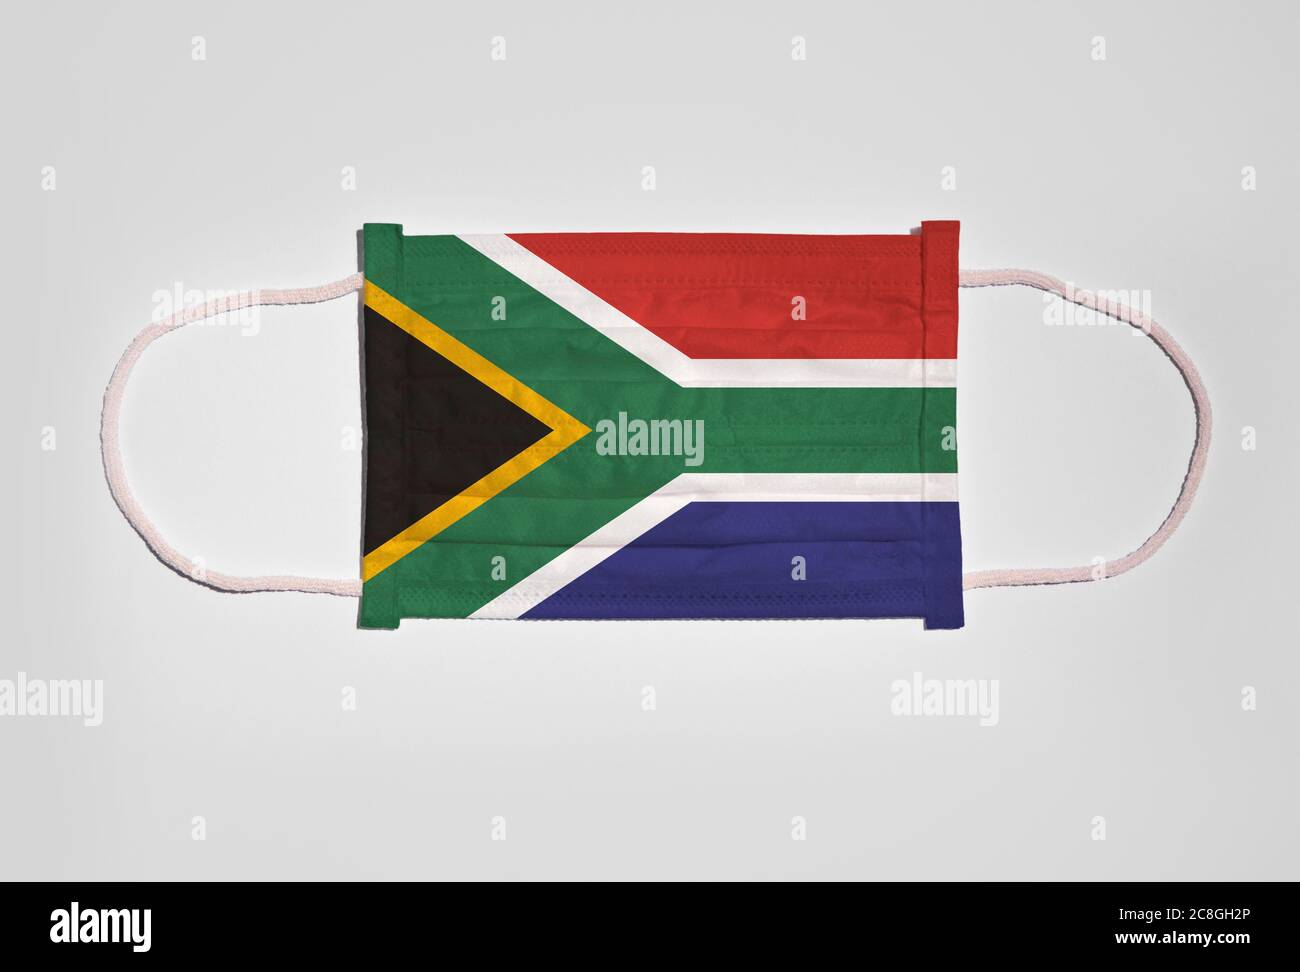 Symbolbild Corona Krise, Mundschutz, Atemmaske, Mund- und Nasenschutz mit Flagge Südafrikas, weißer Hintergrund Stockfoto